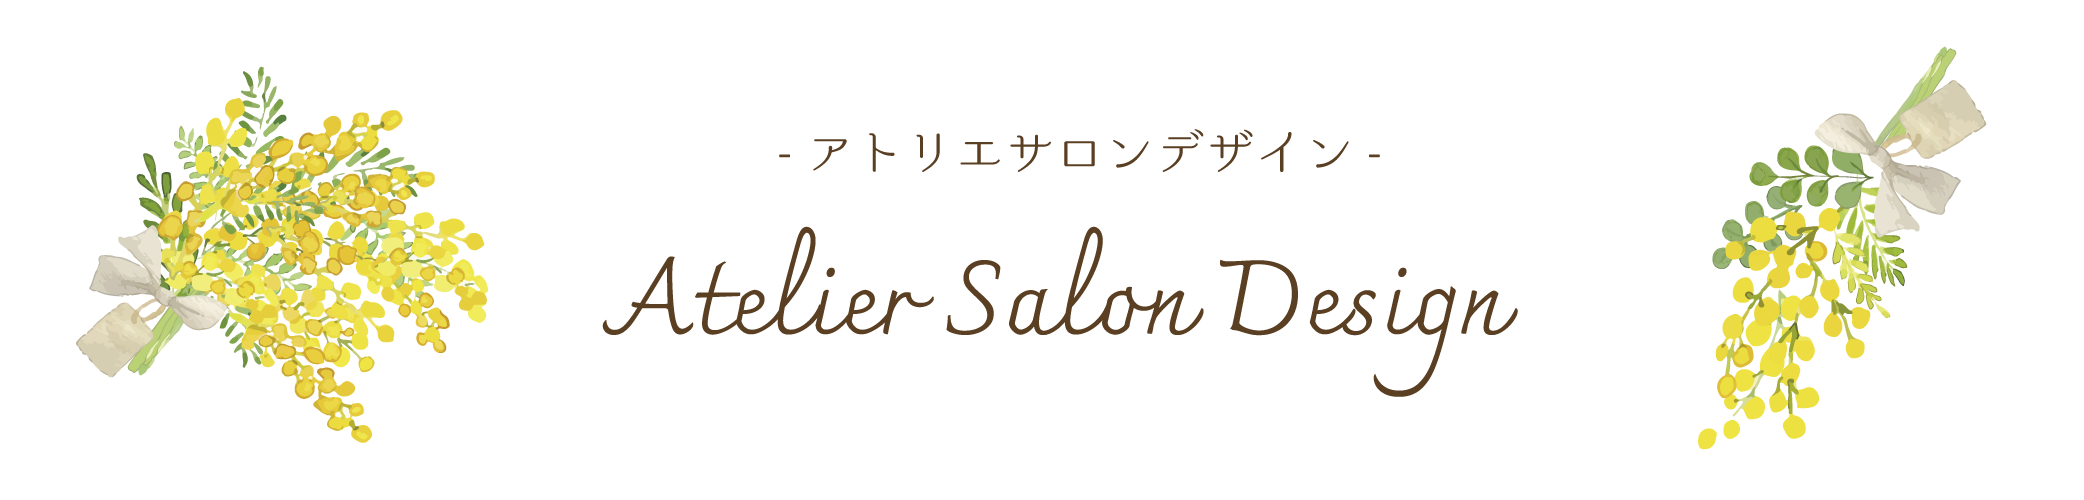 【美容サロン・美容ジャンル専門デザイン/美容広告】Atelier Salon Design -アトリエサロンデザイン-